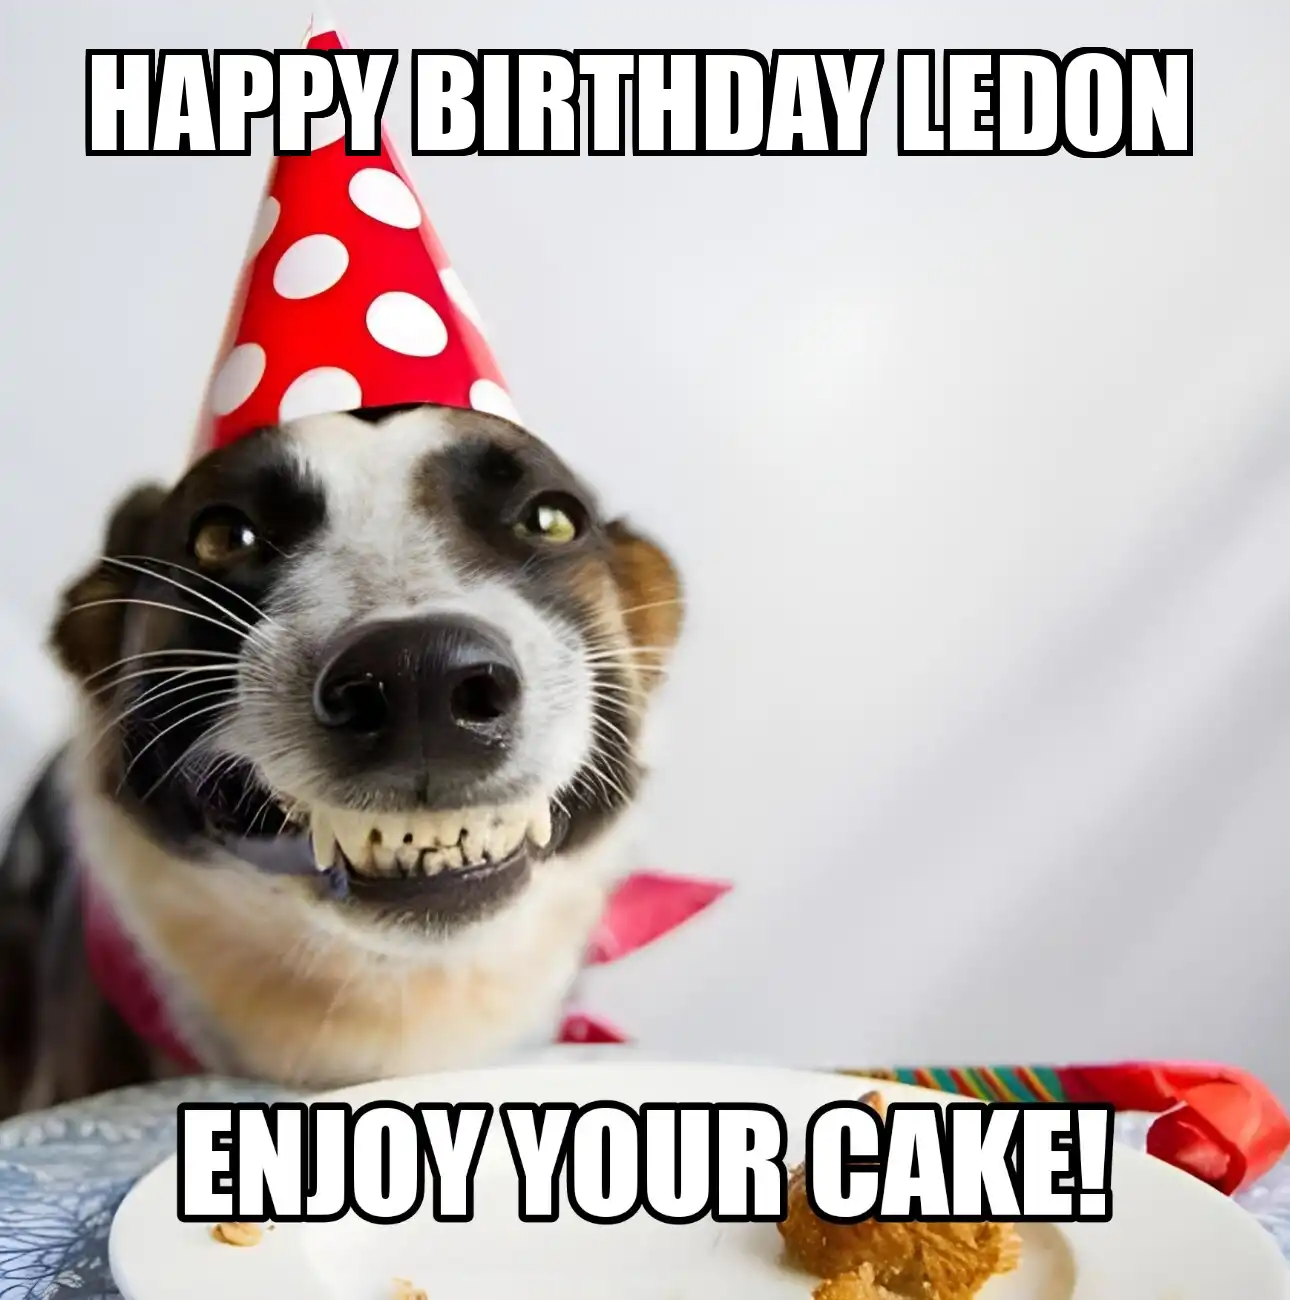 Happy Birthday Ledon Enjoy Your Cake Dog Meme